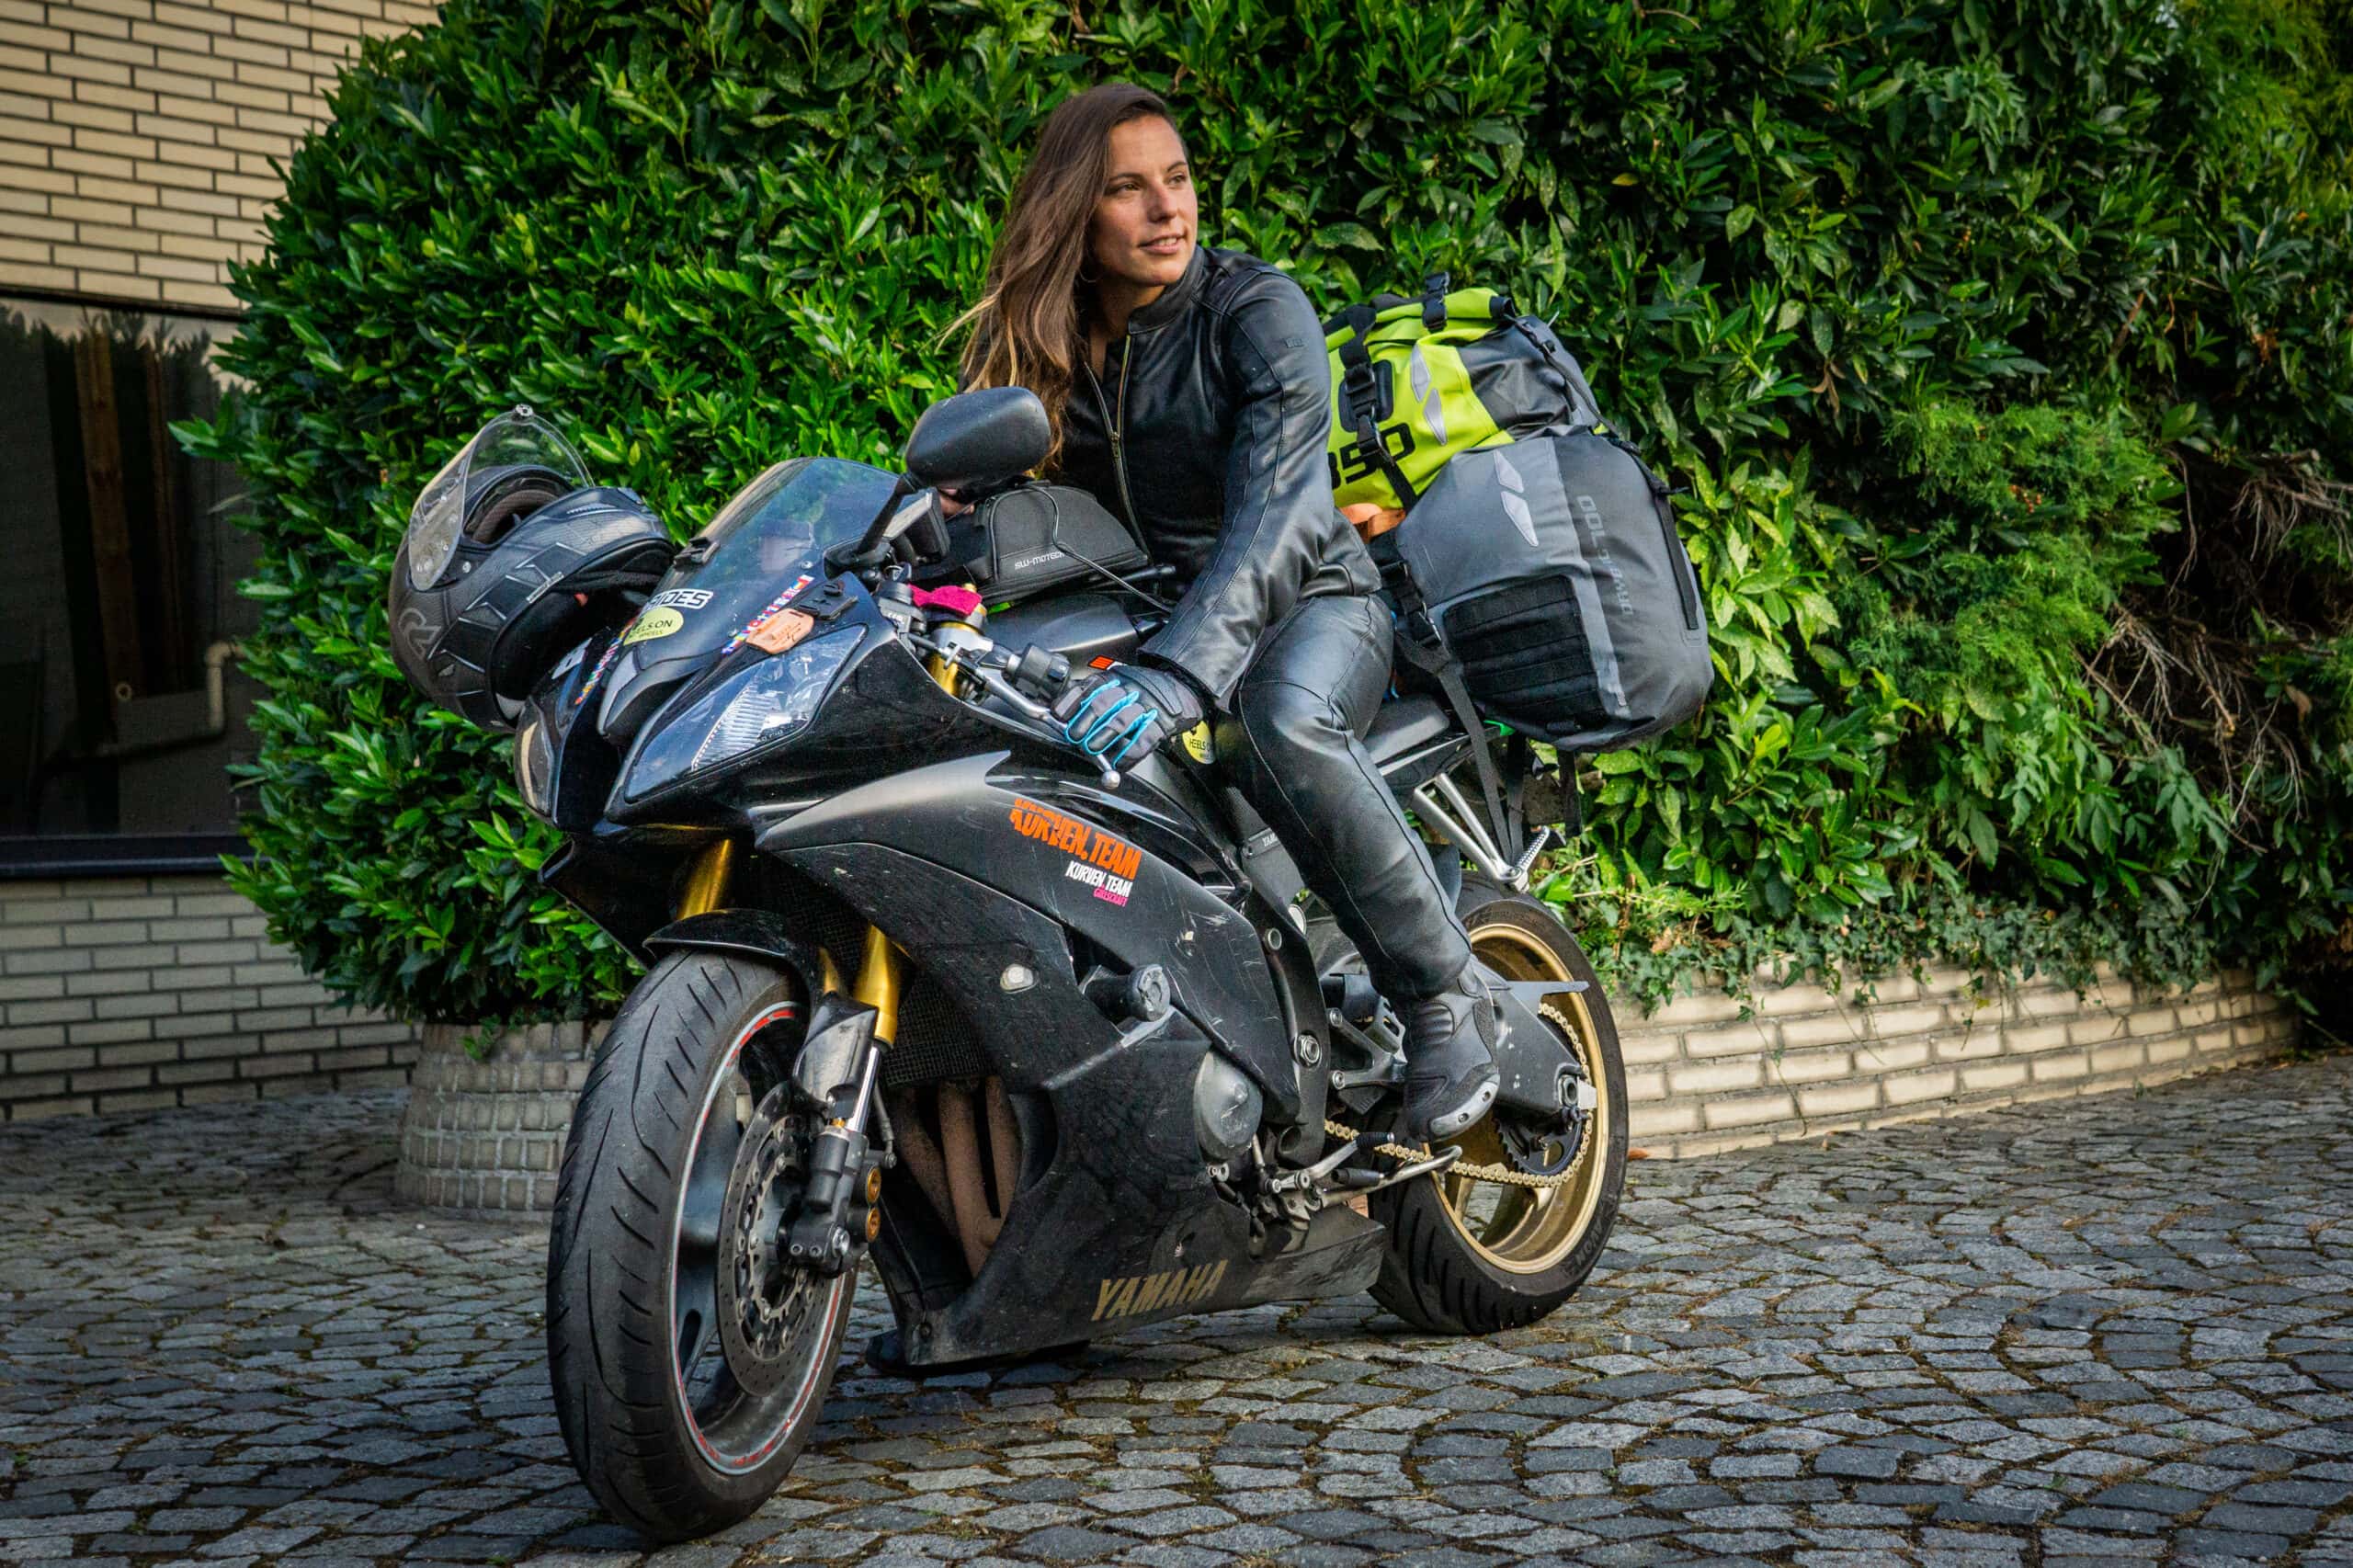 Auf Tour, auf dem Rundkurs und im Motorradalltag zeigt die IXS Aberdeen Lederkombi was sie kann. Die Motorrad-Lederkombi für Damen.